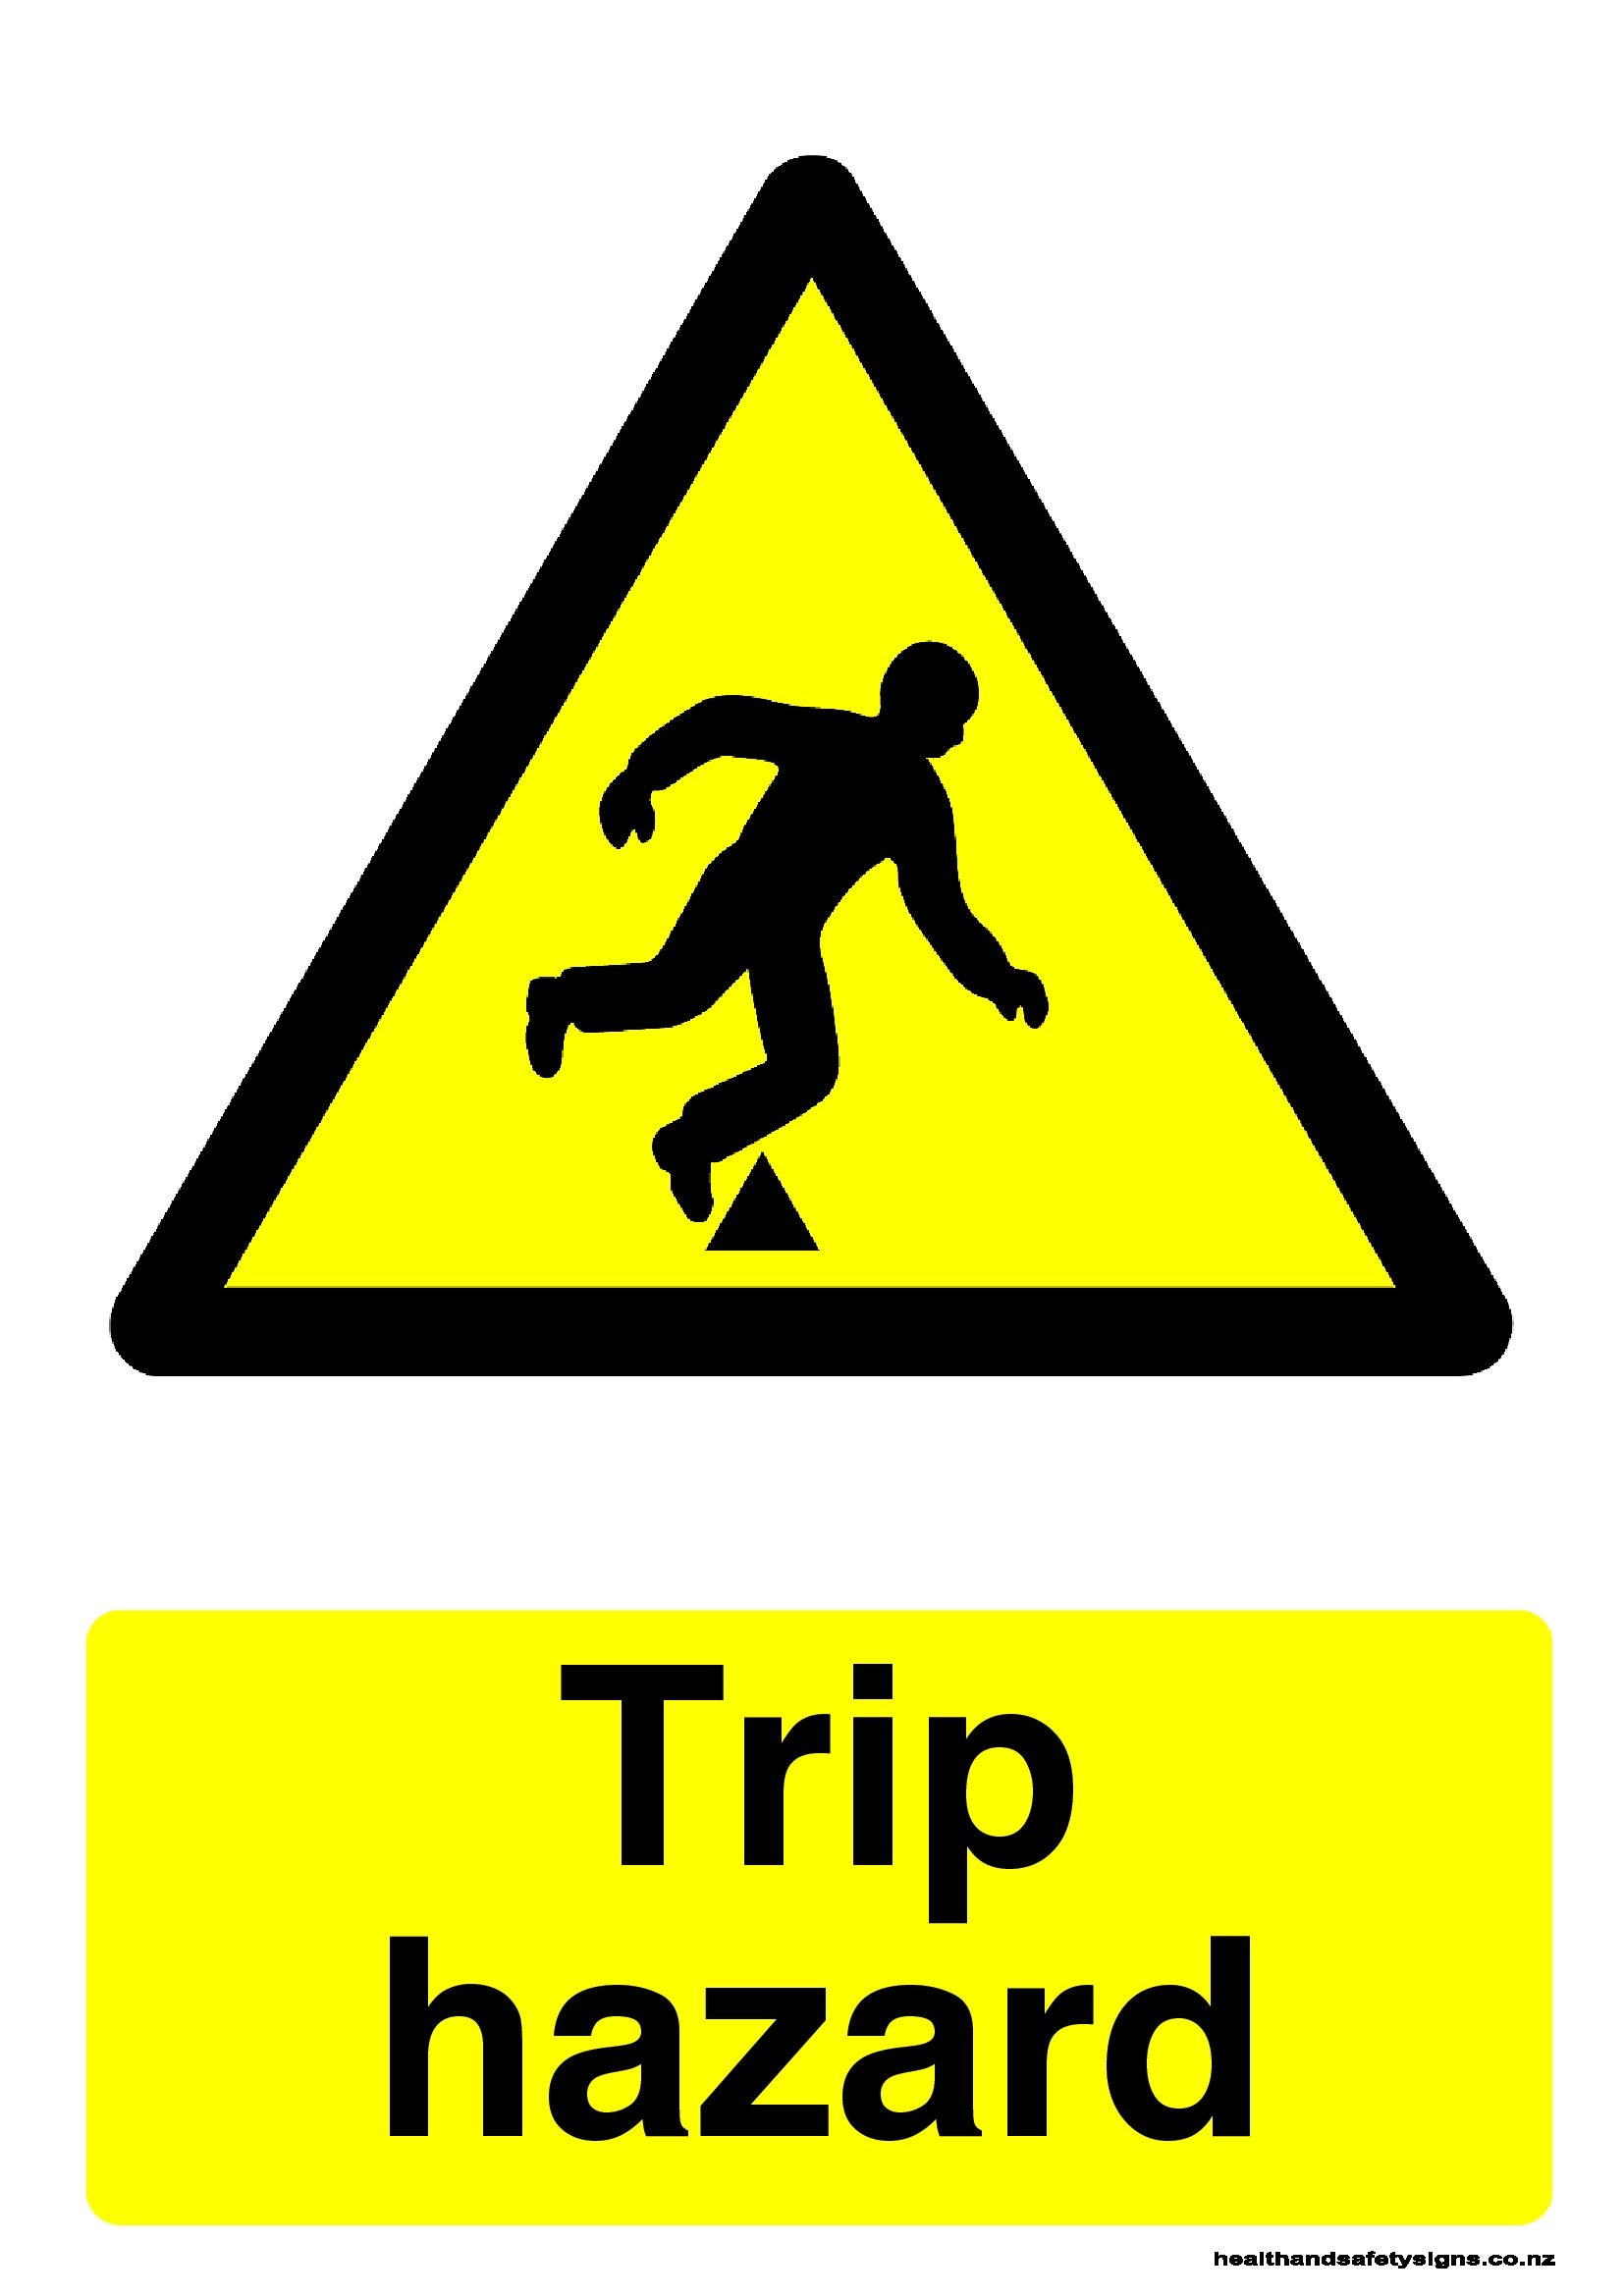 trip hazard sign